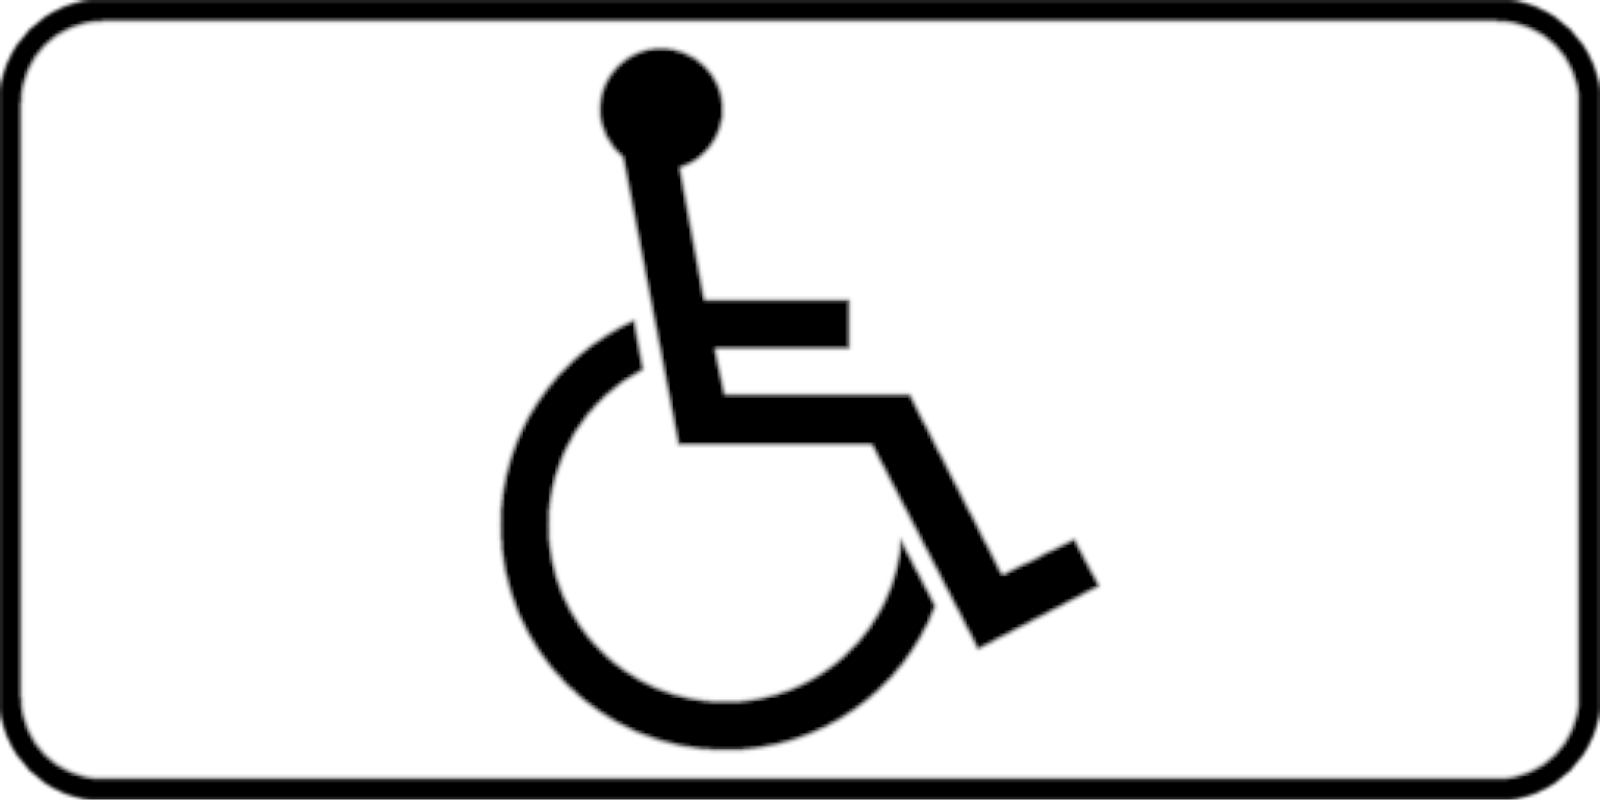 Дорожный знак 8.17 "Инвалиды", типоразмер 3 (350х700) световозвращающая пленка класс Iа (табличка)